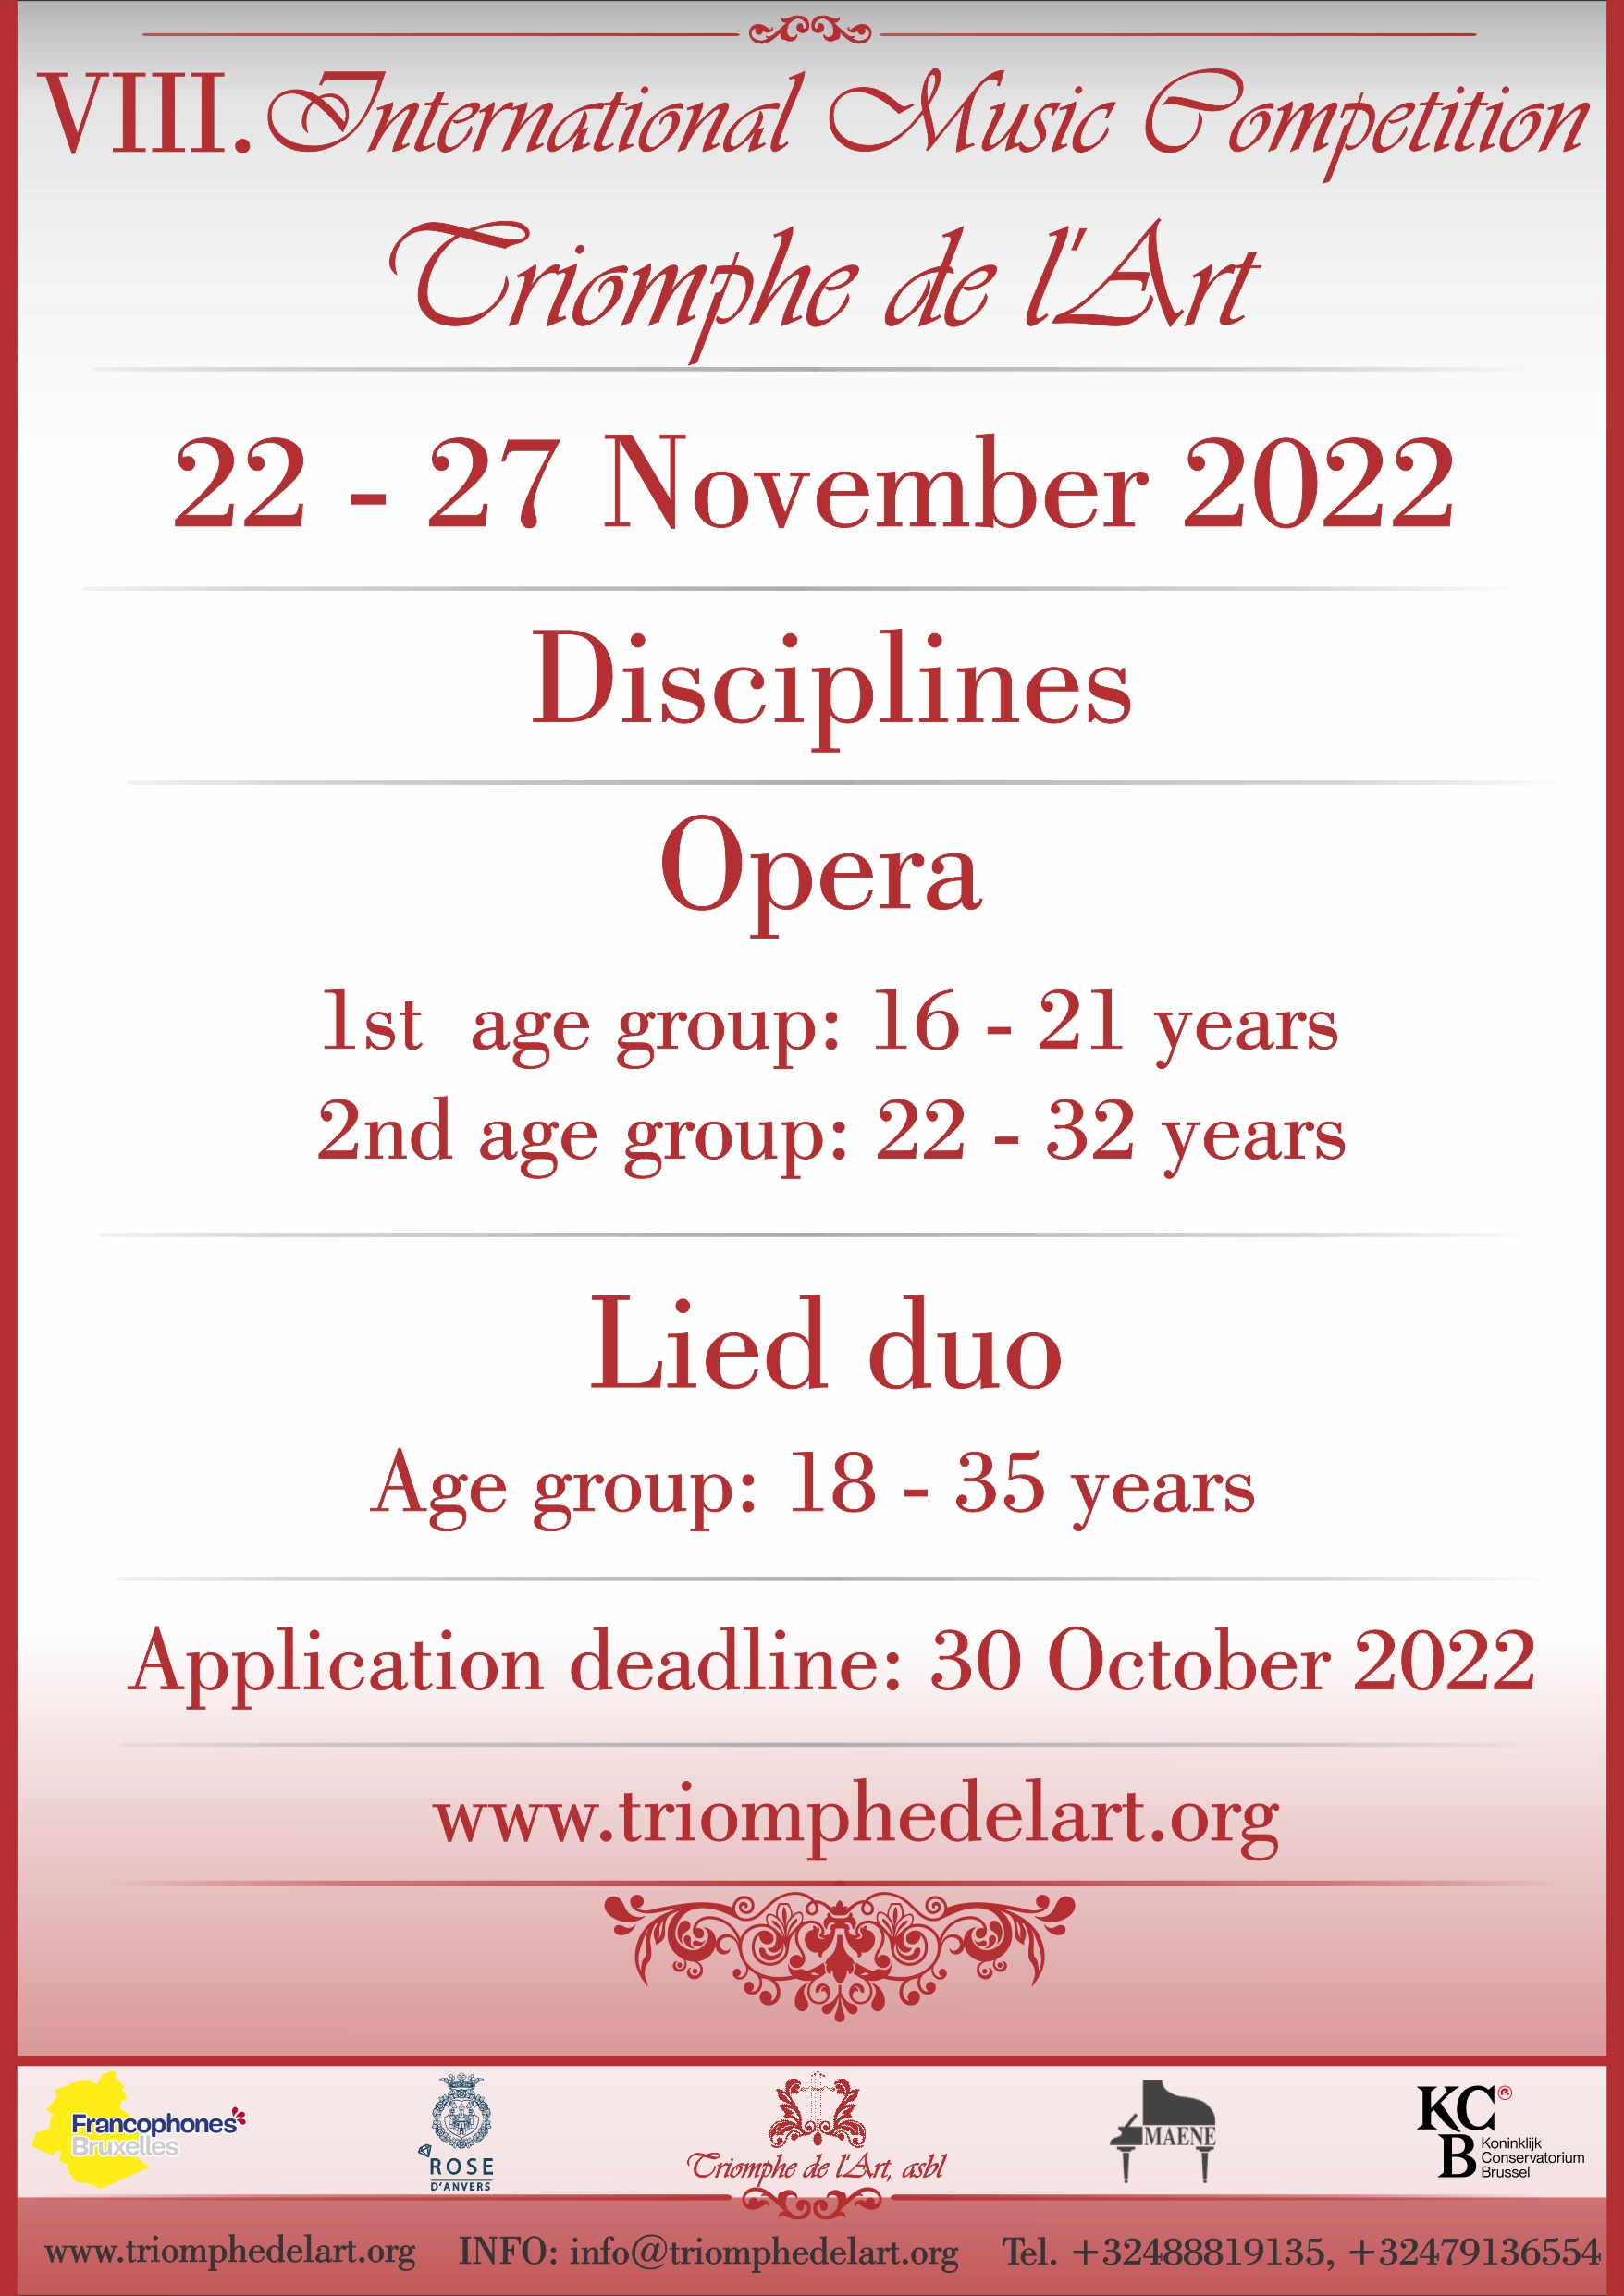 5de Internationale Muziekwedstrijd Triomf de l'Art disciplines Opera and Lied duo